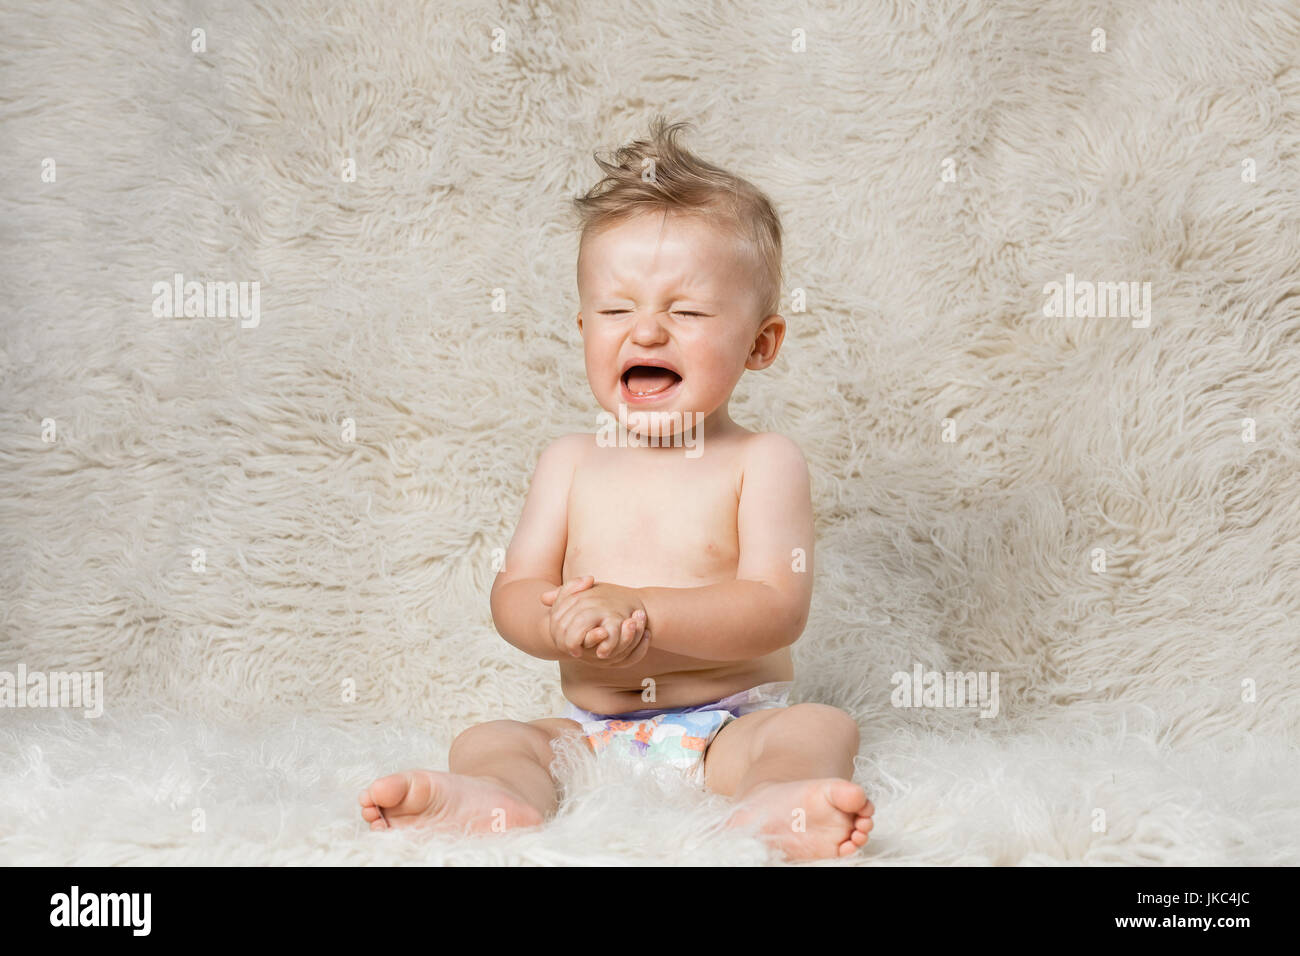 El llanto del bebé niño en pañales, sentada sobre una manta de lana shaggy caseros Foto de stock